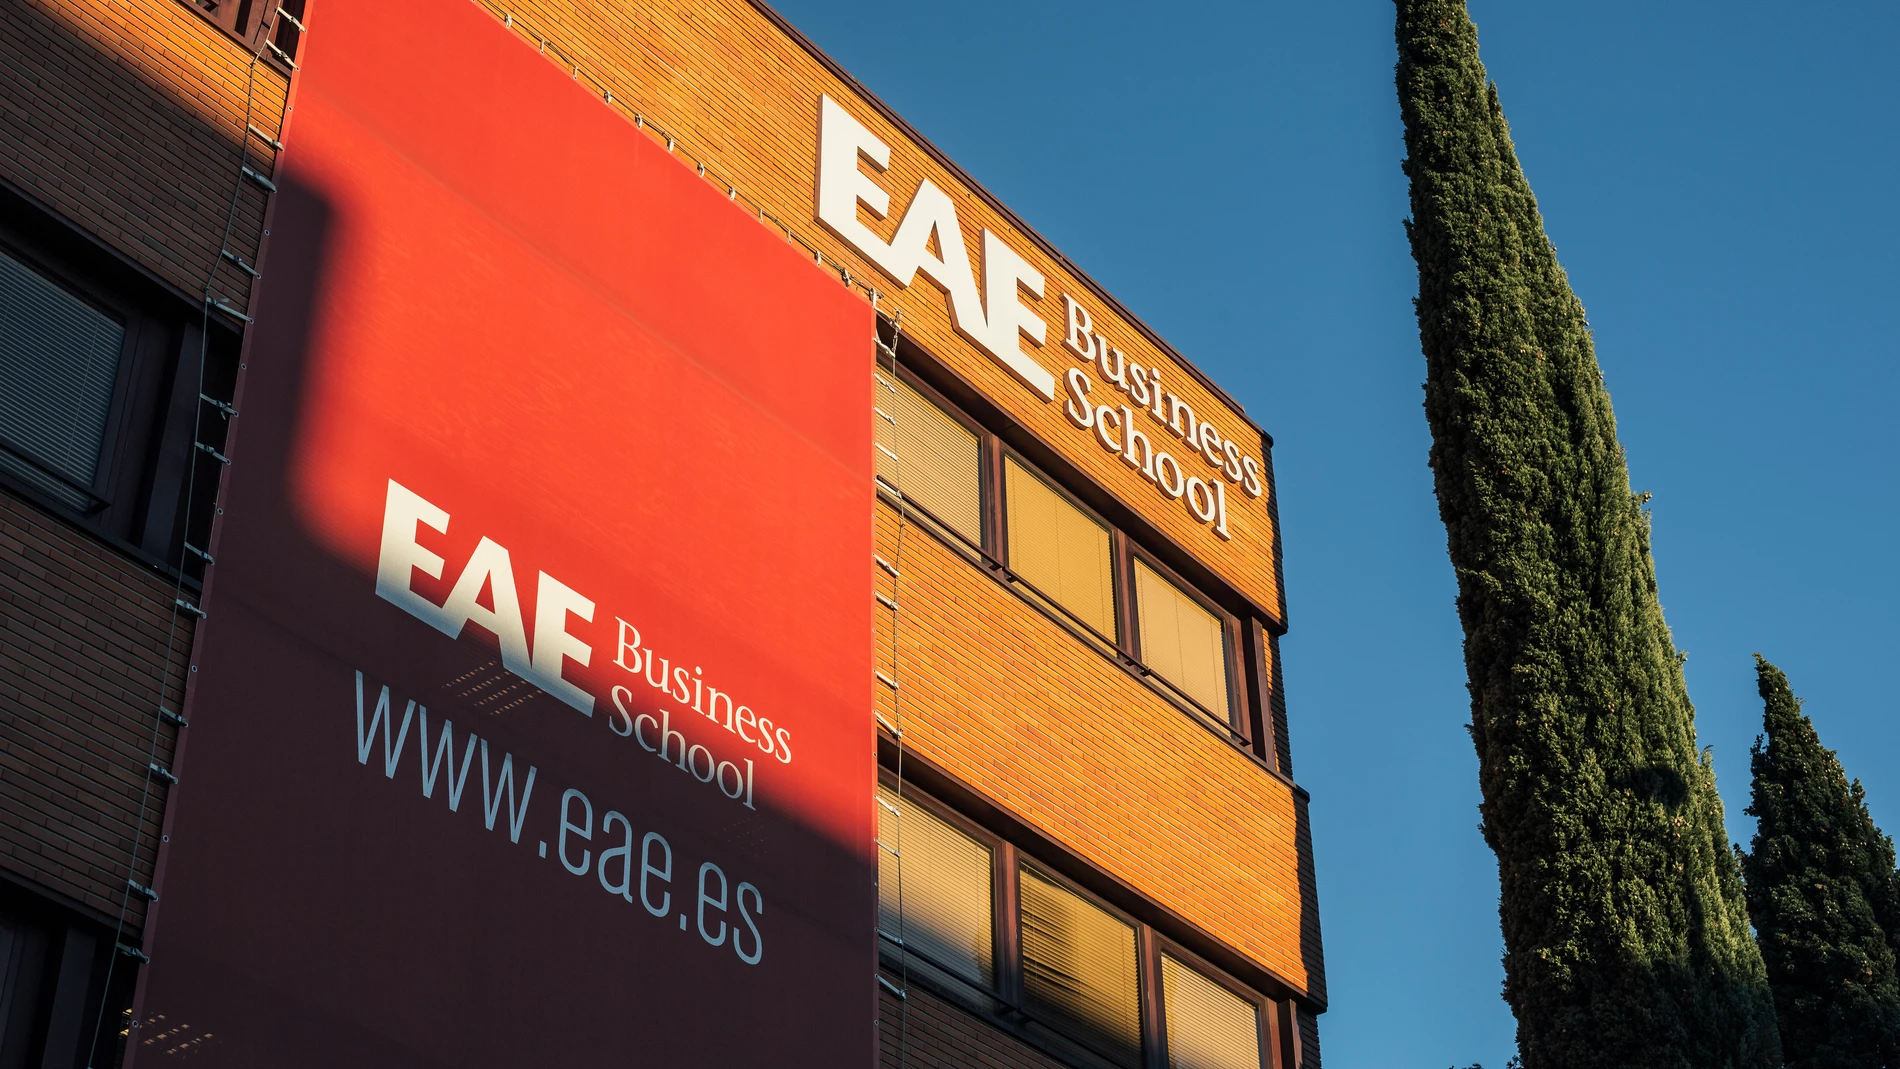 Los campus de EAE Business School en Madrid cuentan con una amplia oferta formativa